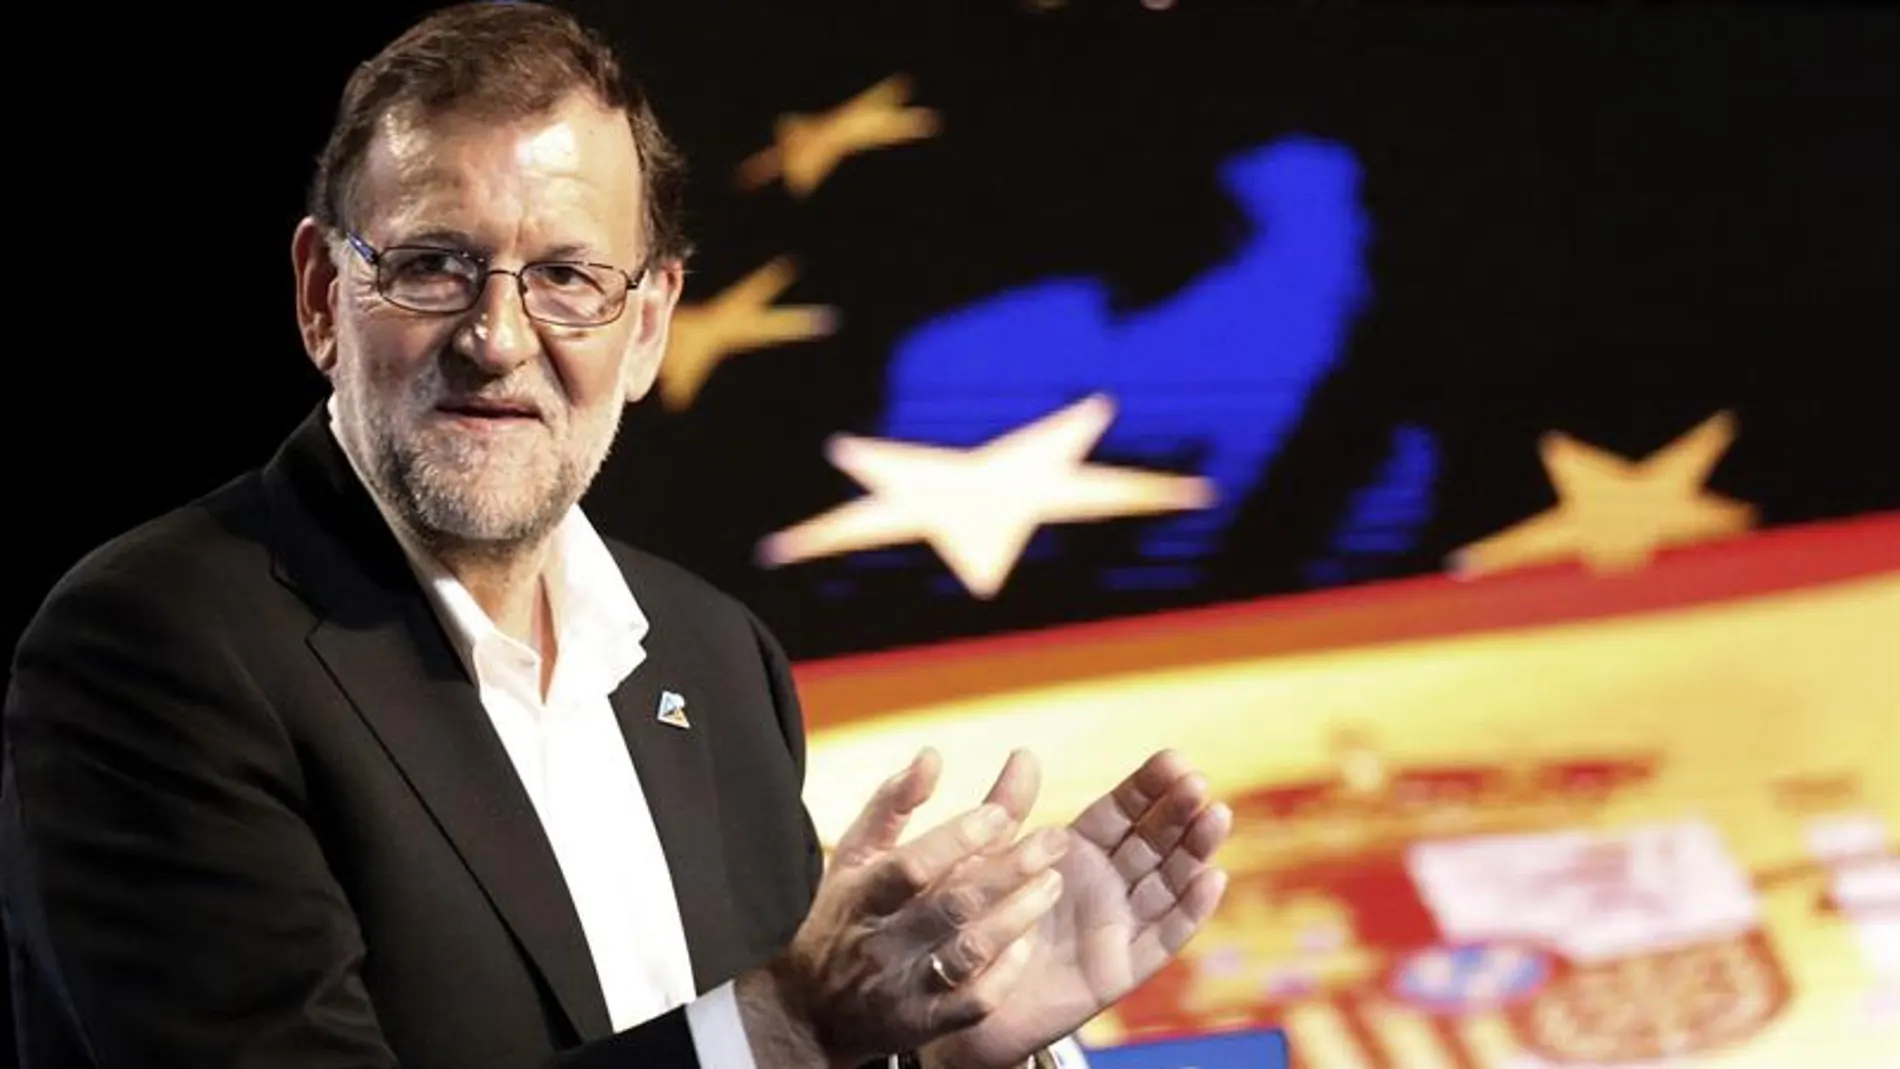 Mariano Rajoy habla desde Bilbao.